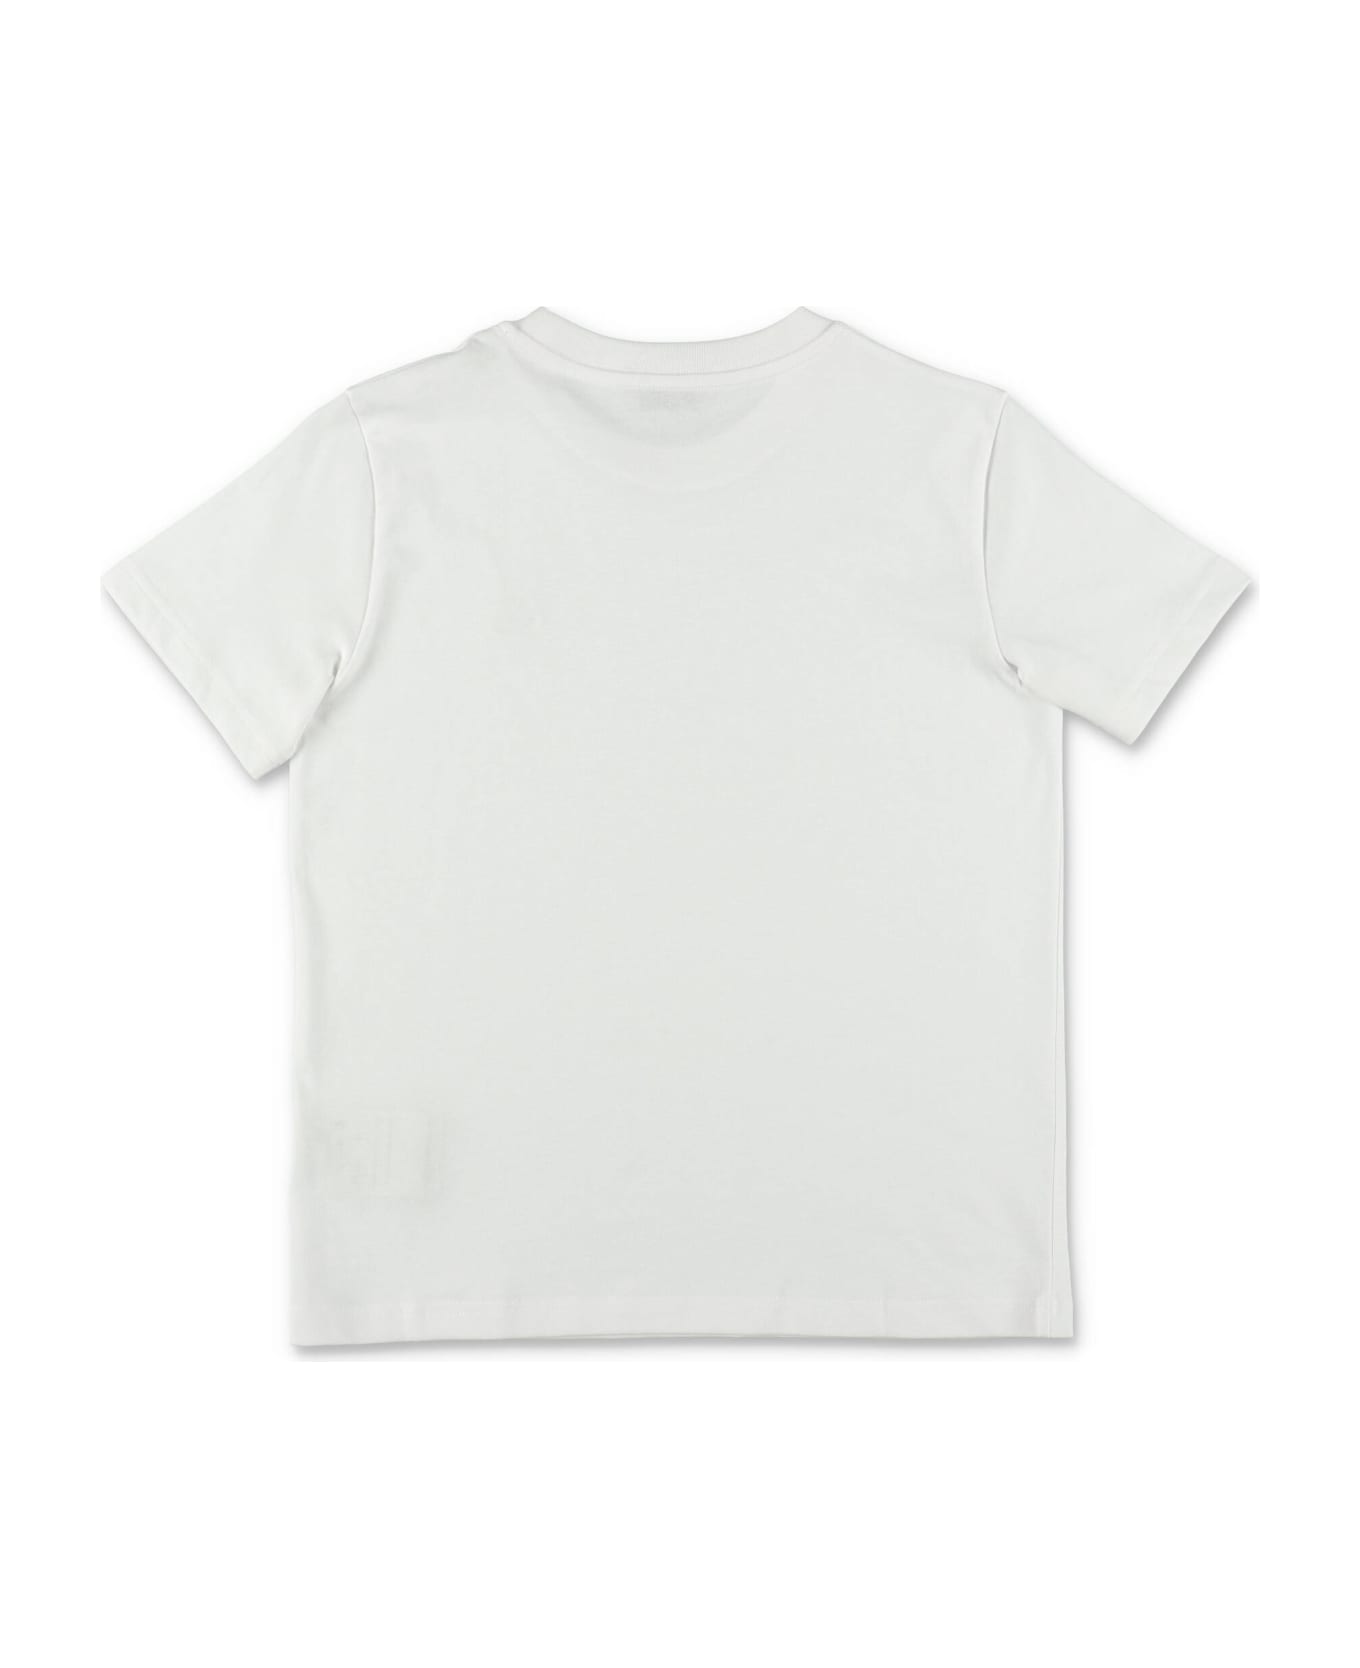 Moncler T-shirt Bianca In Jersey Di Cotone Bambino - Bianco Tシャツ＆ポロシャツ